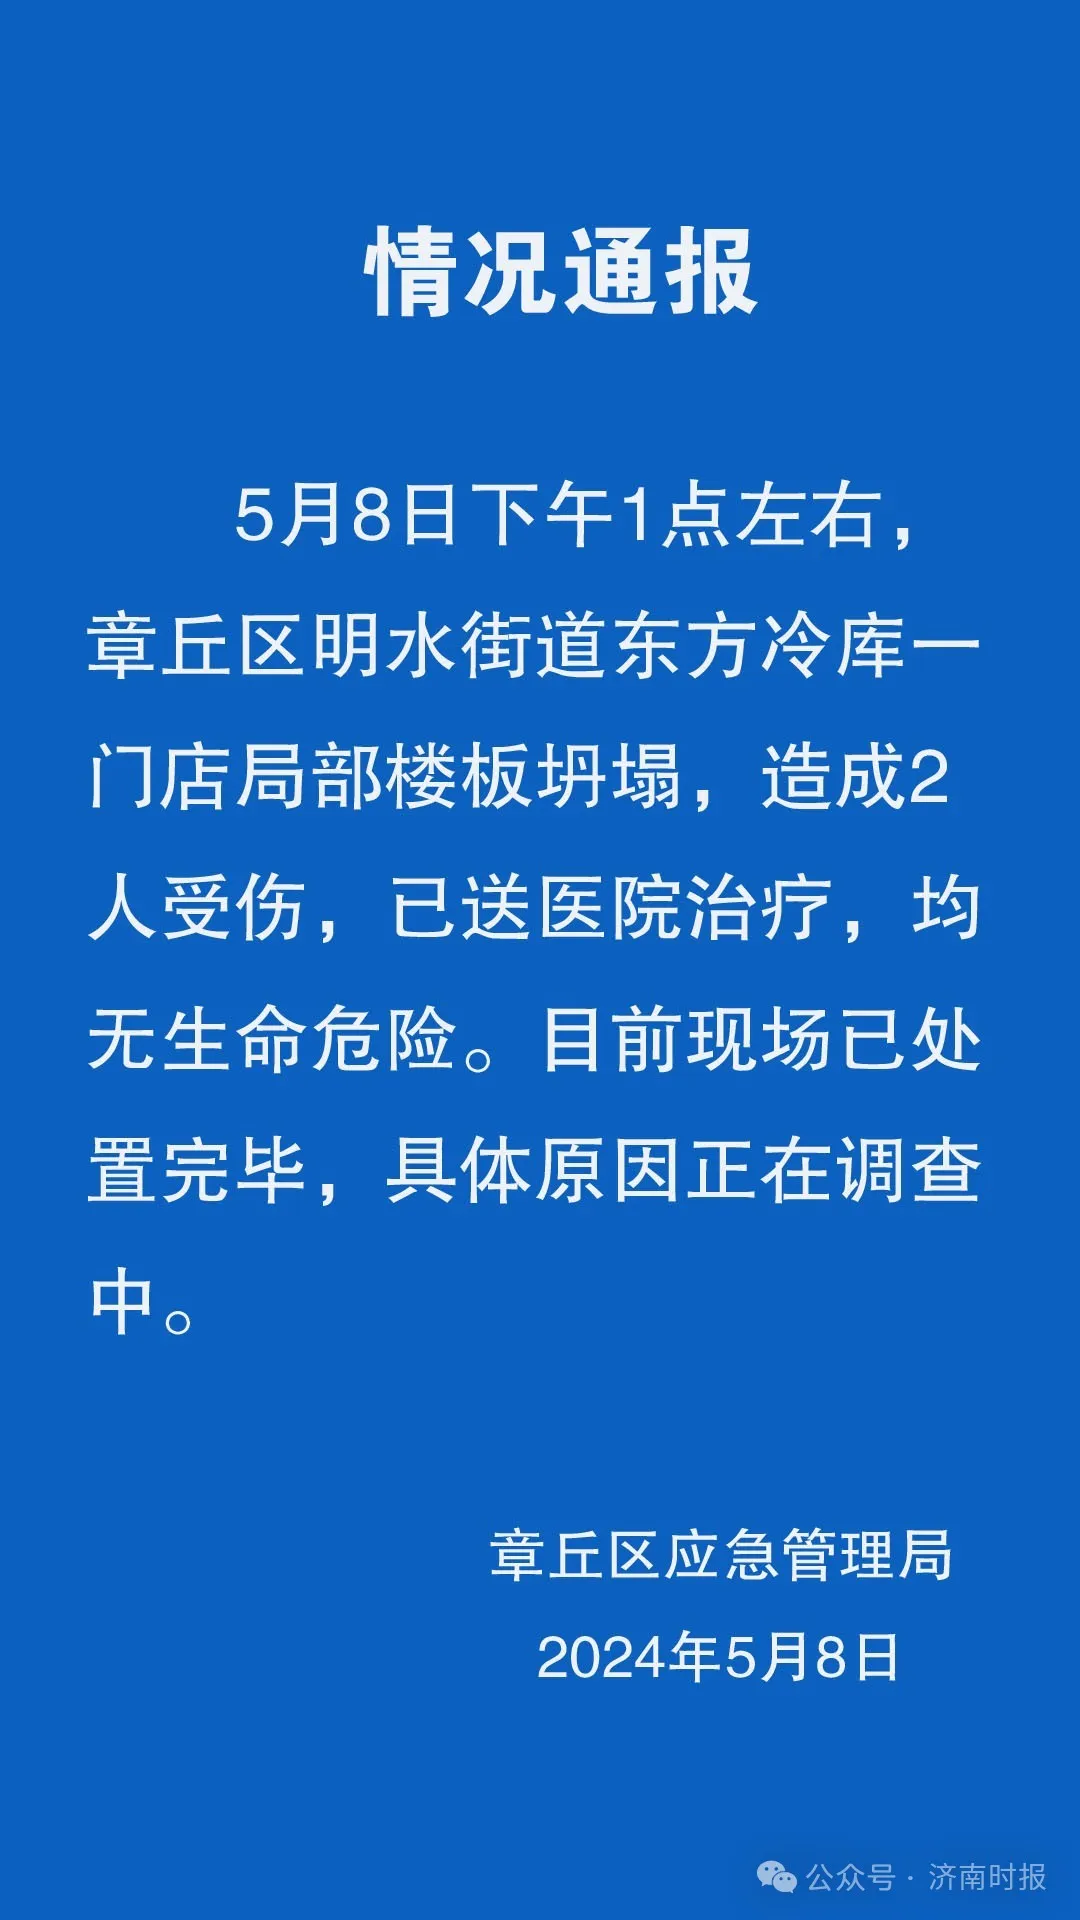 “济南章丘一门店坍塌救护车拉了七八车”系不实信息！